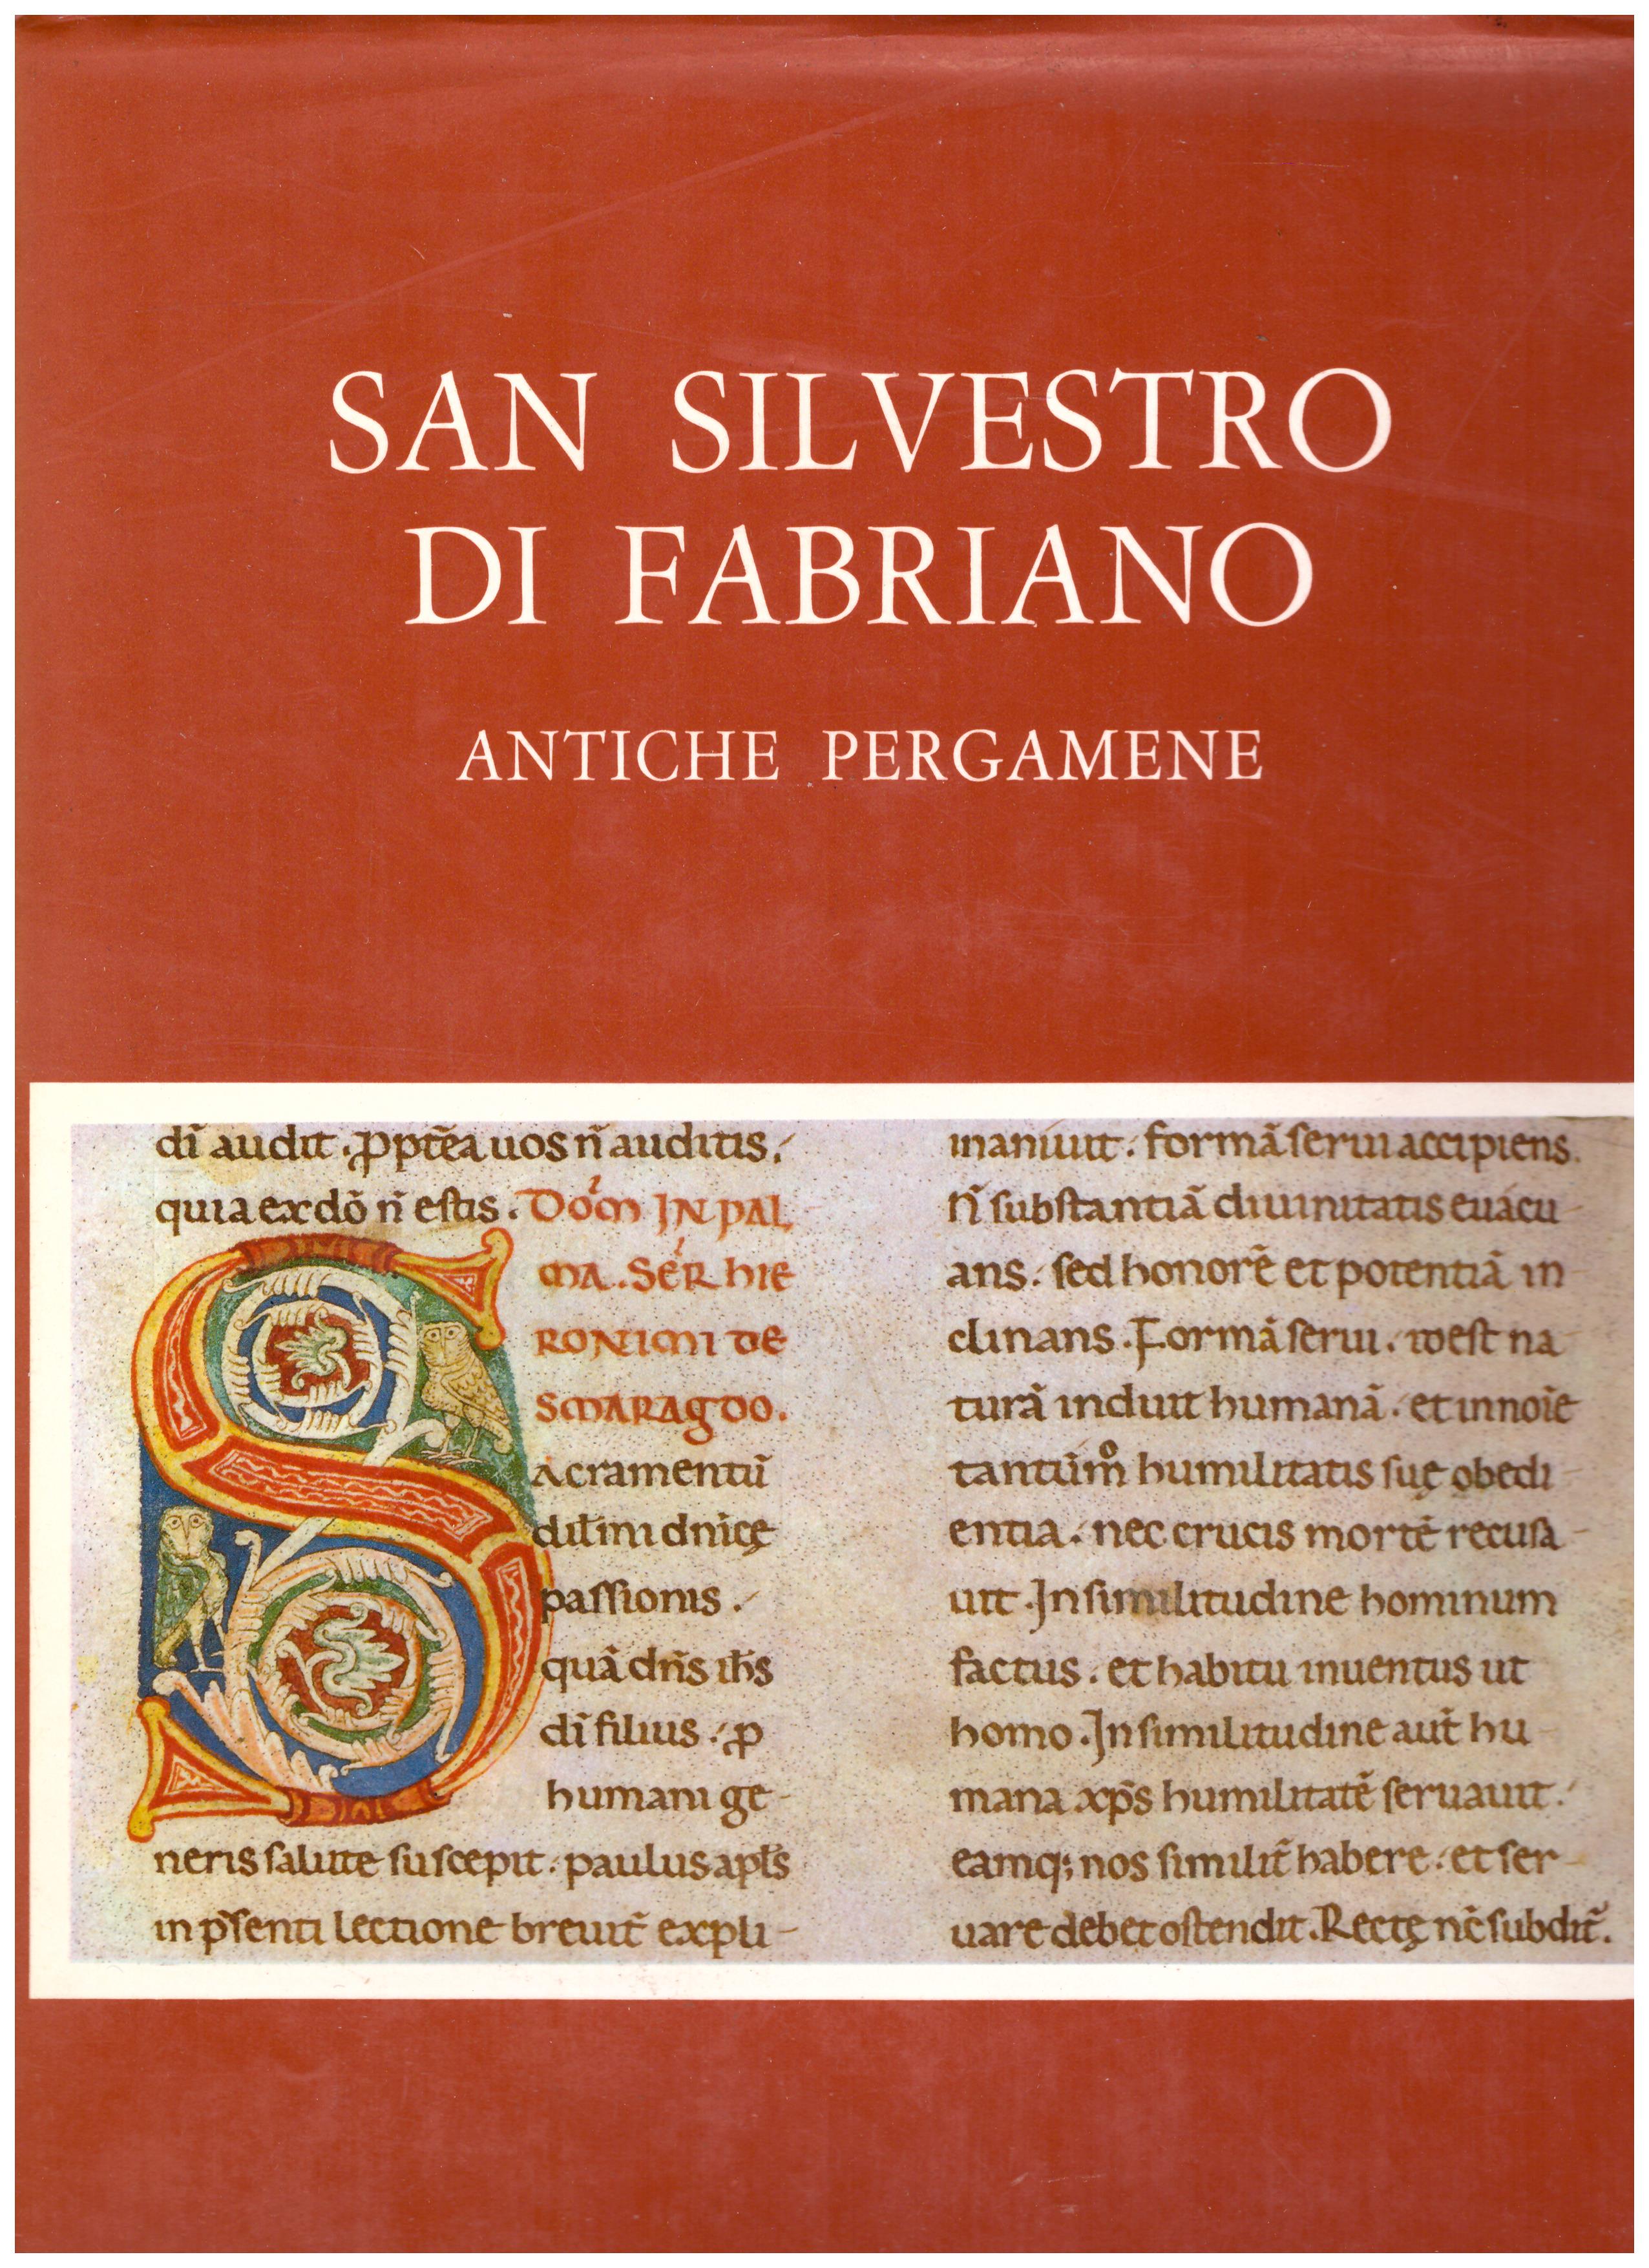 Titolo: San Silvestro di Fabriano, Antiche pergamene Autore : AA.VV.   Editore: gestisa